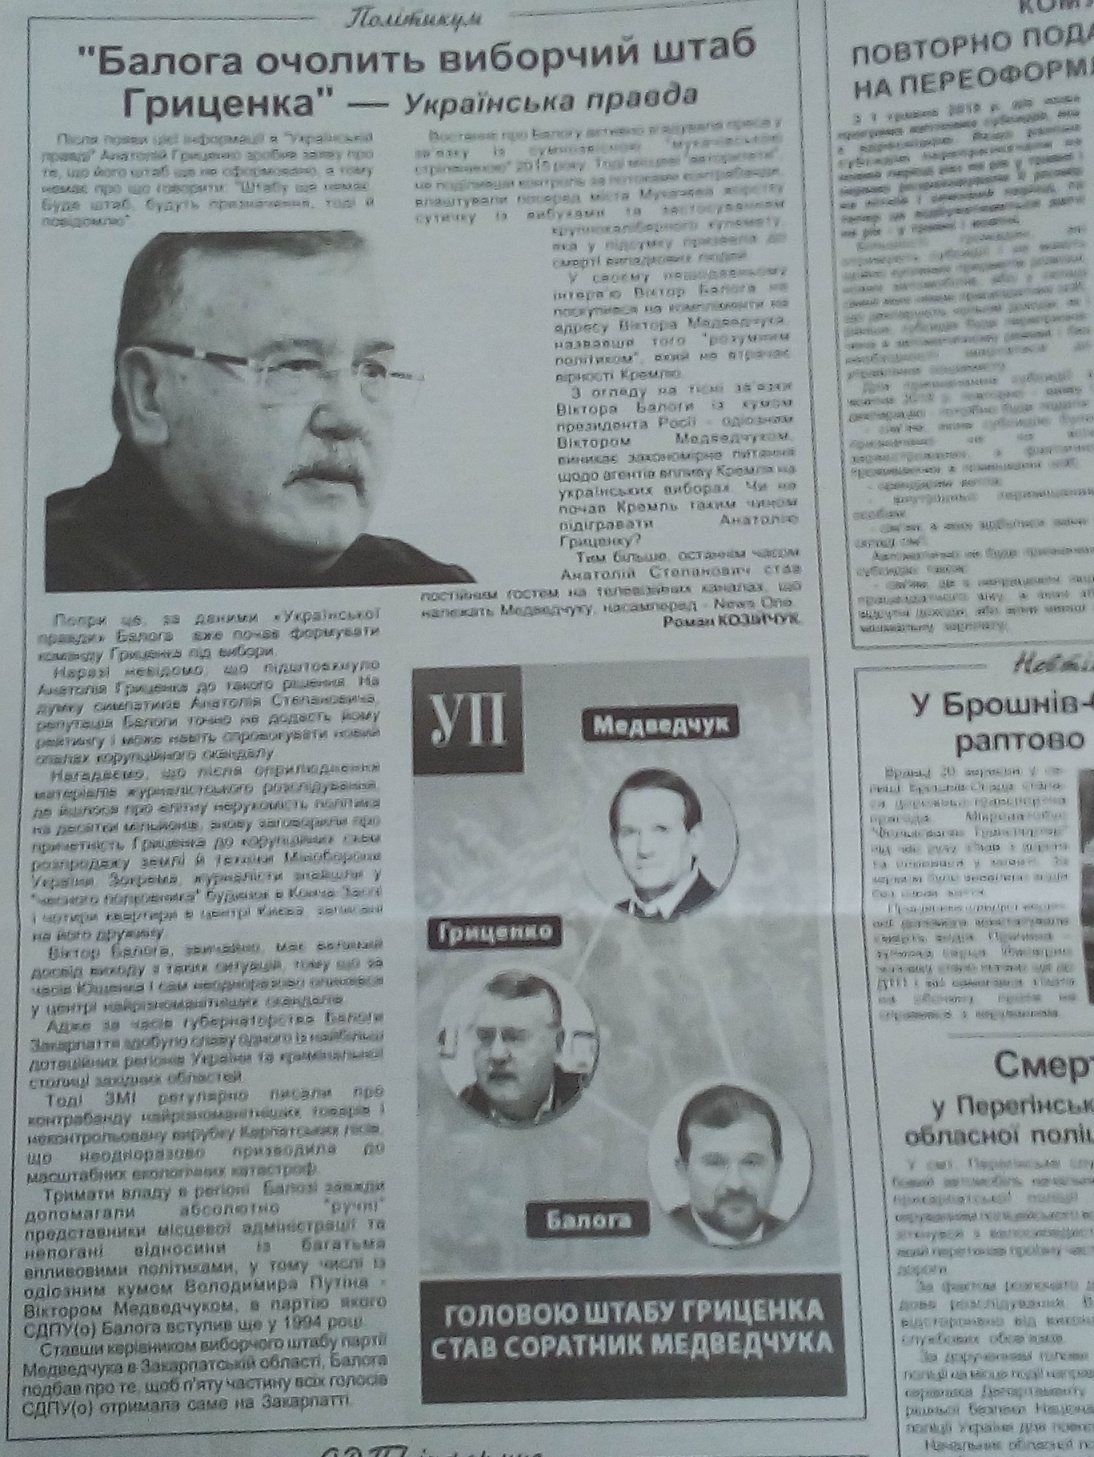 24.12.18. Grytsenko black piar gazety 22